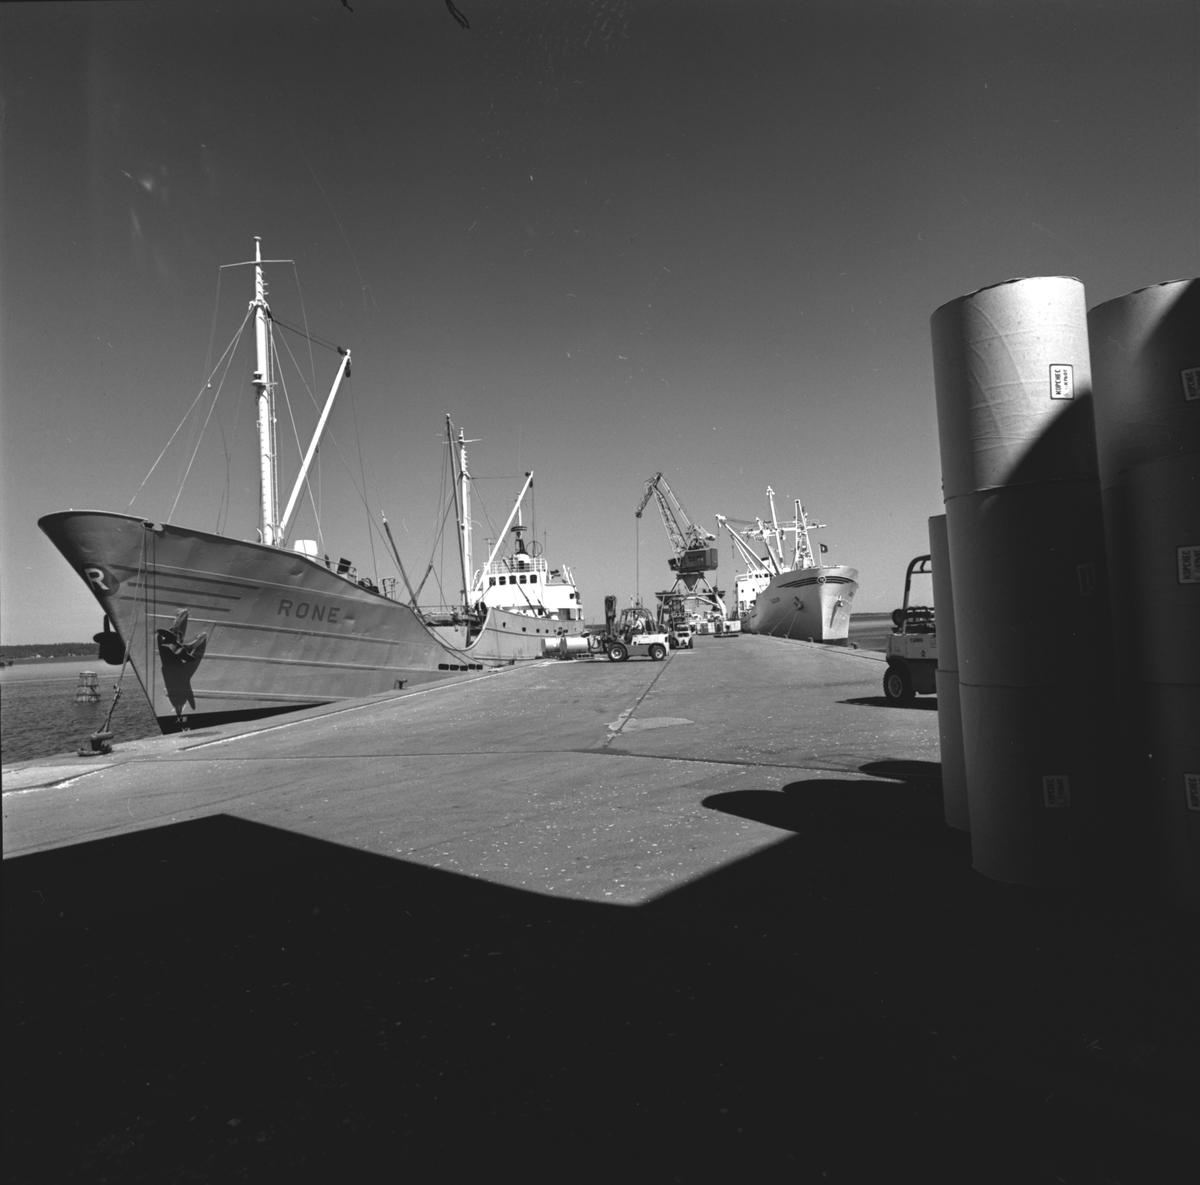 Lastning av pappersrullar på fartyget "Rone". Korsnäs AB. Den 19 juni 1968
